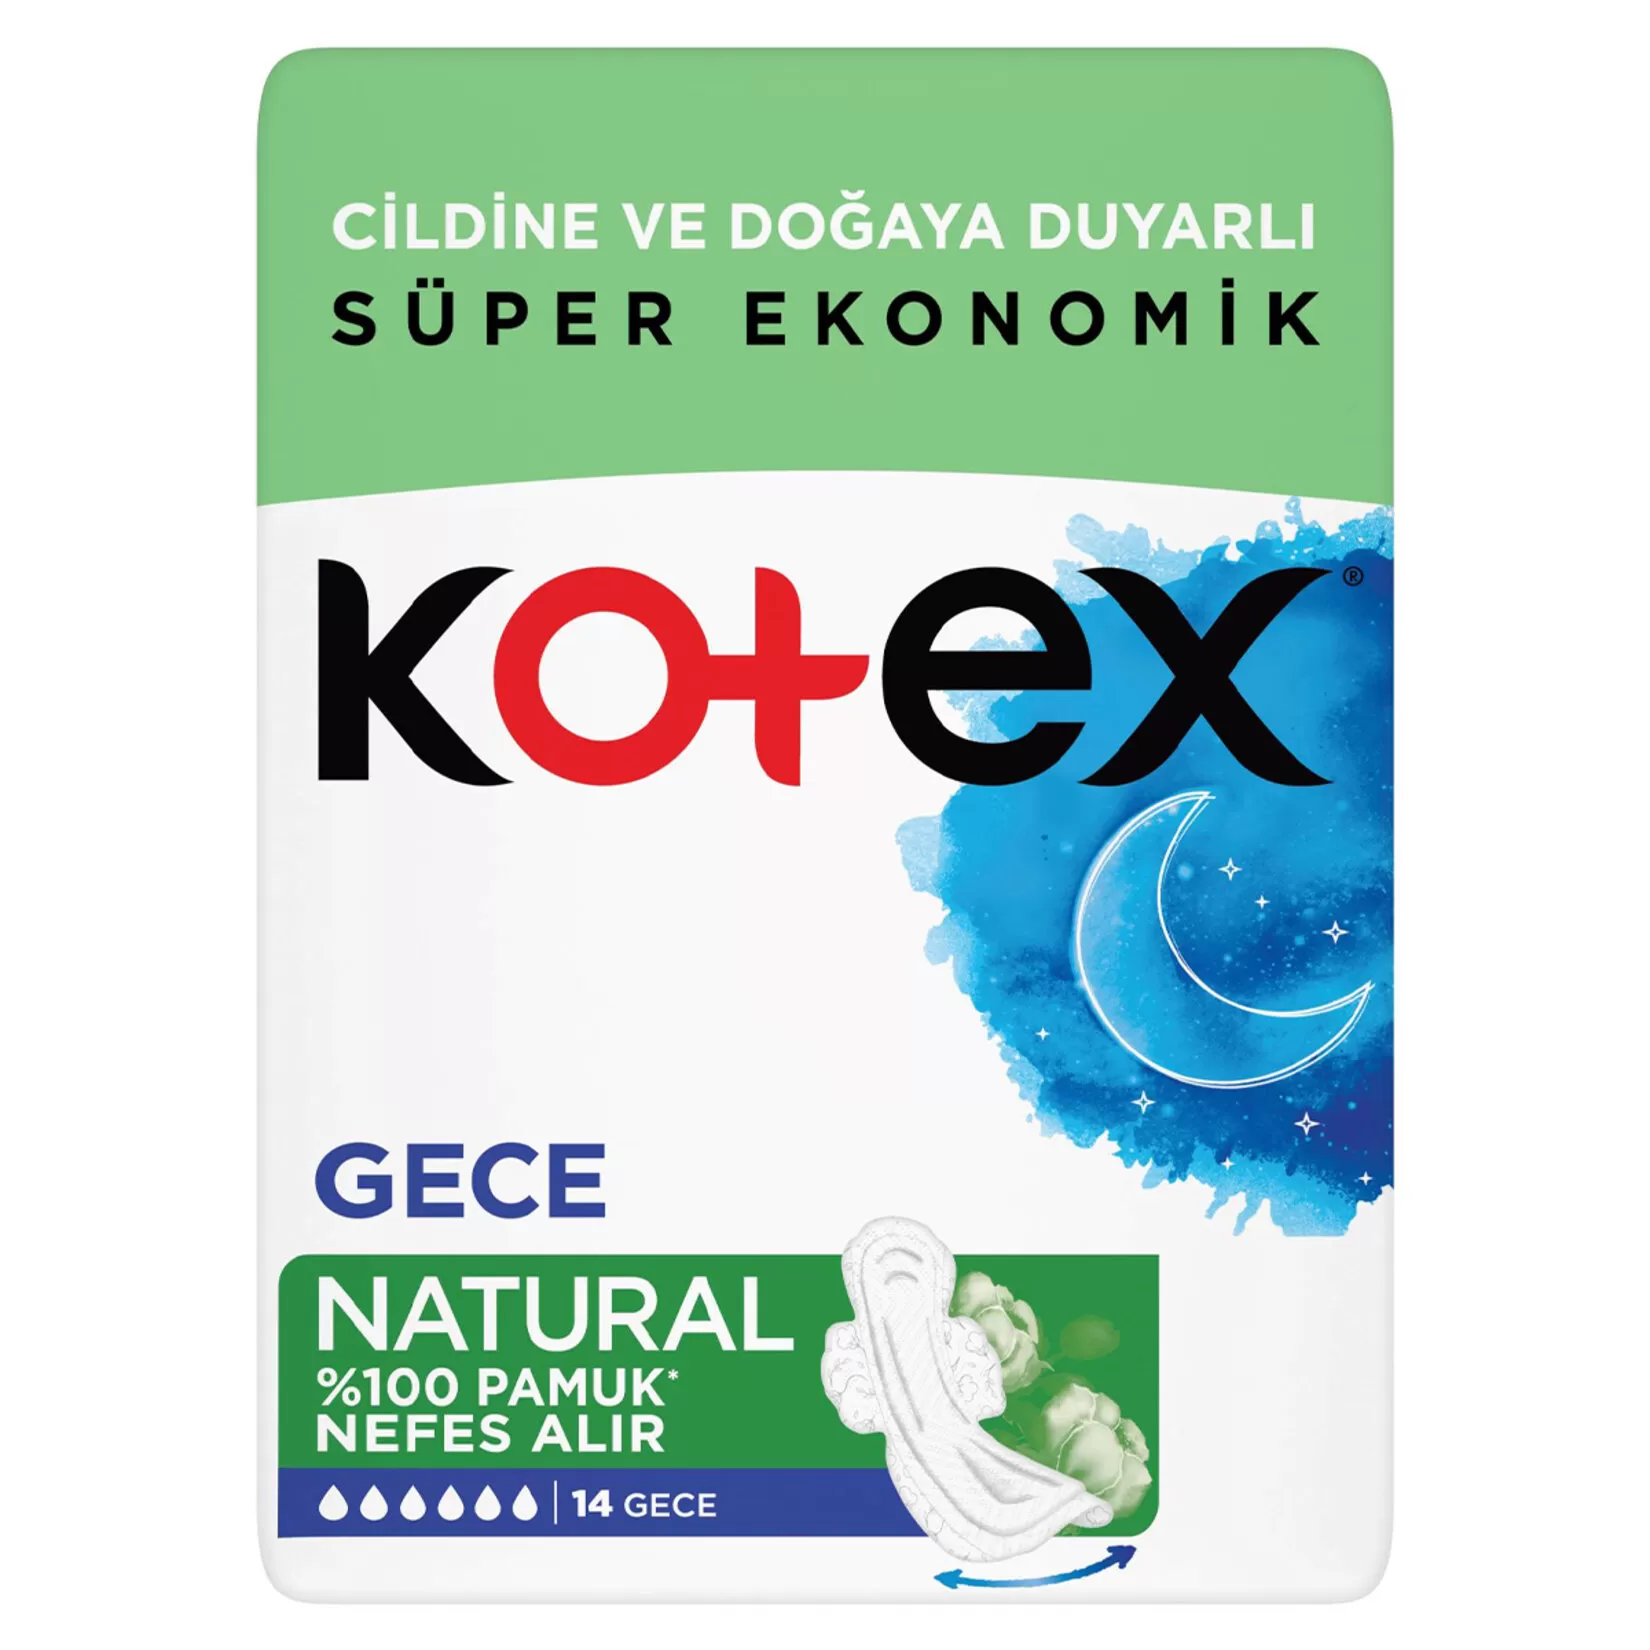 Kotex Natural Ped Gece 14x5 70 Adet